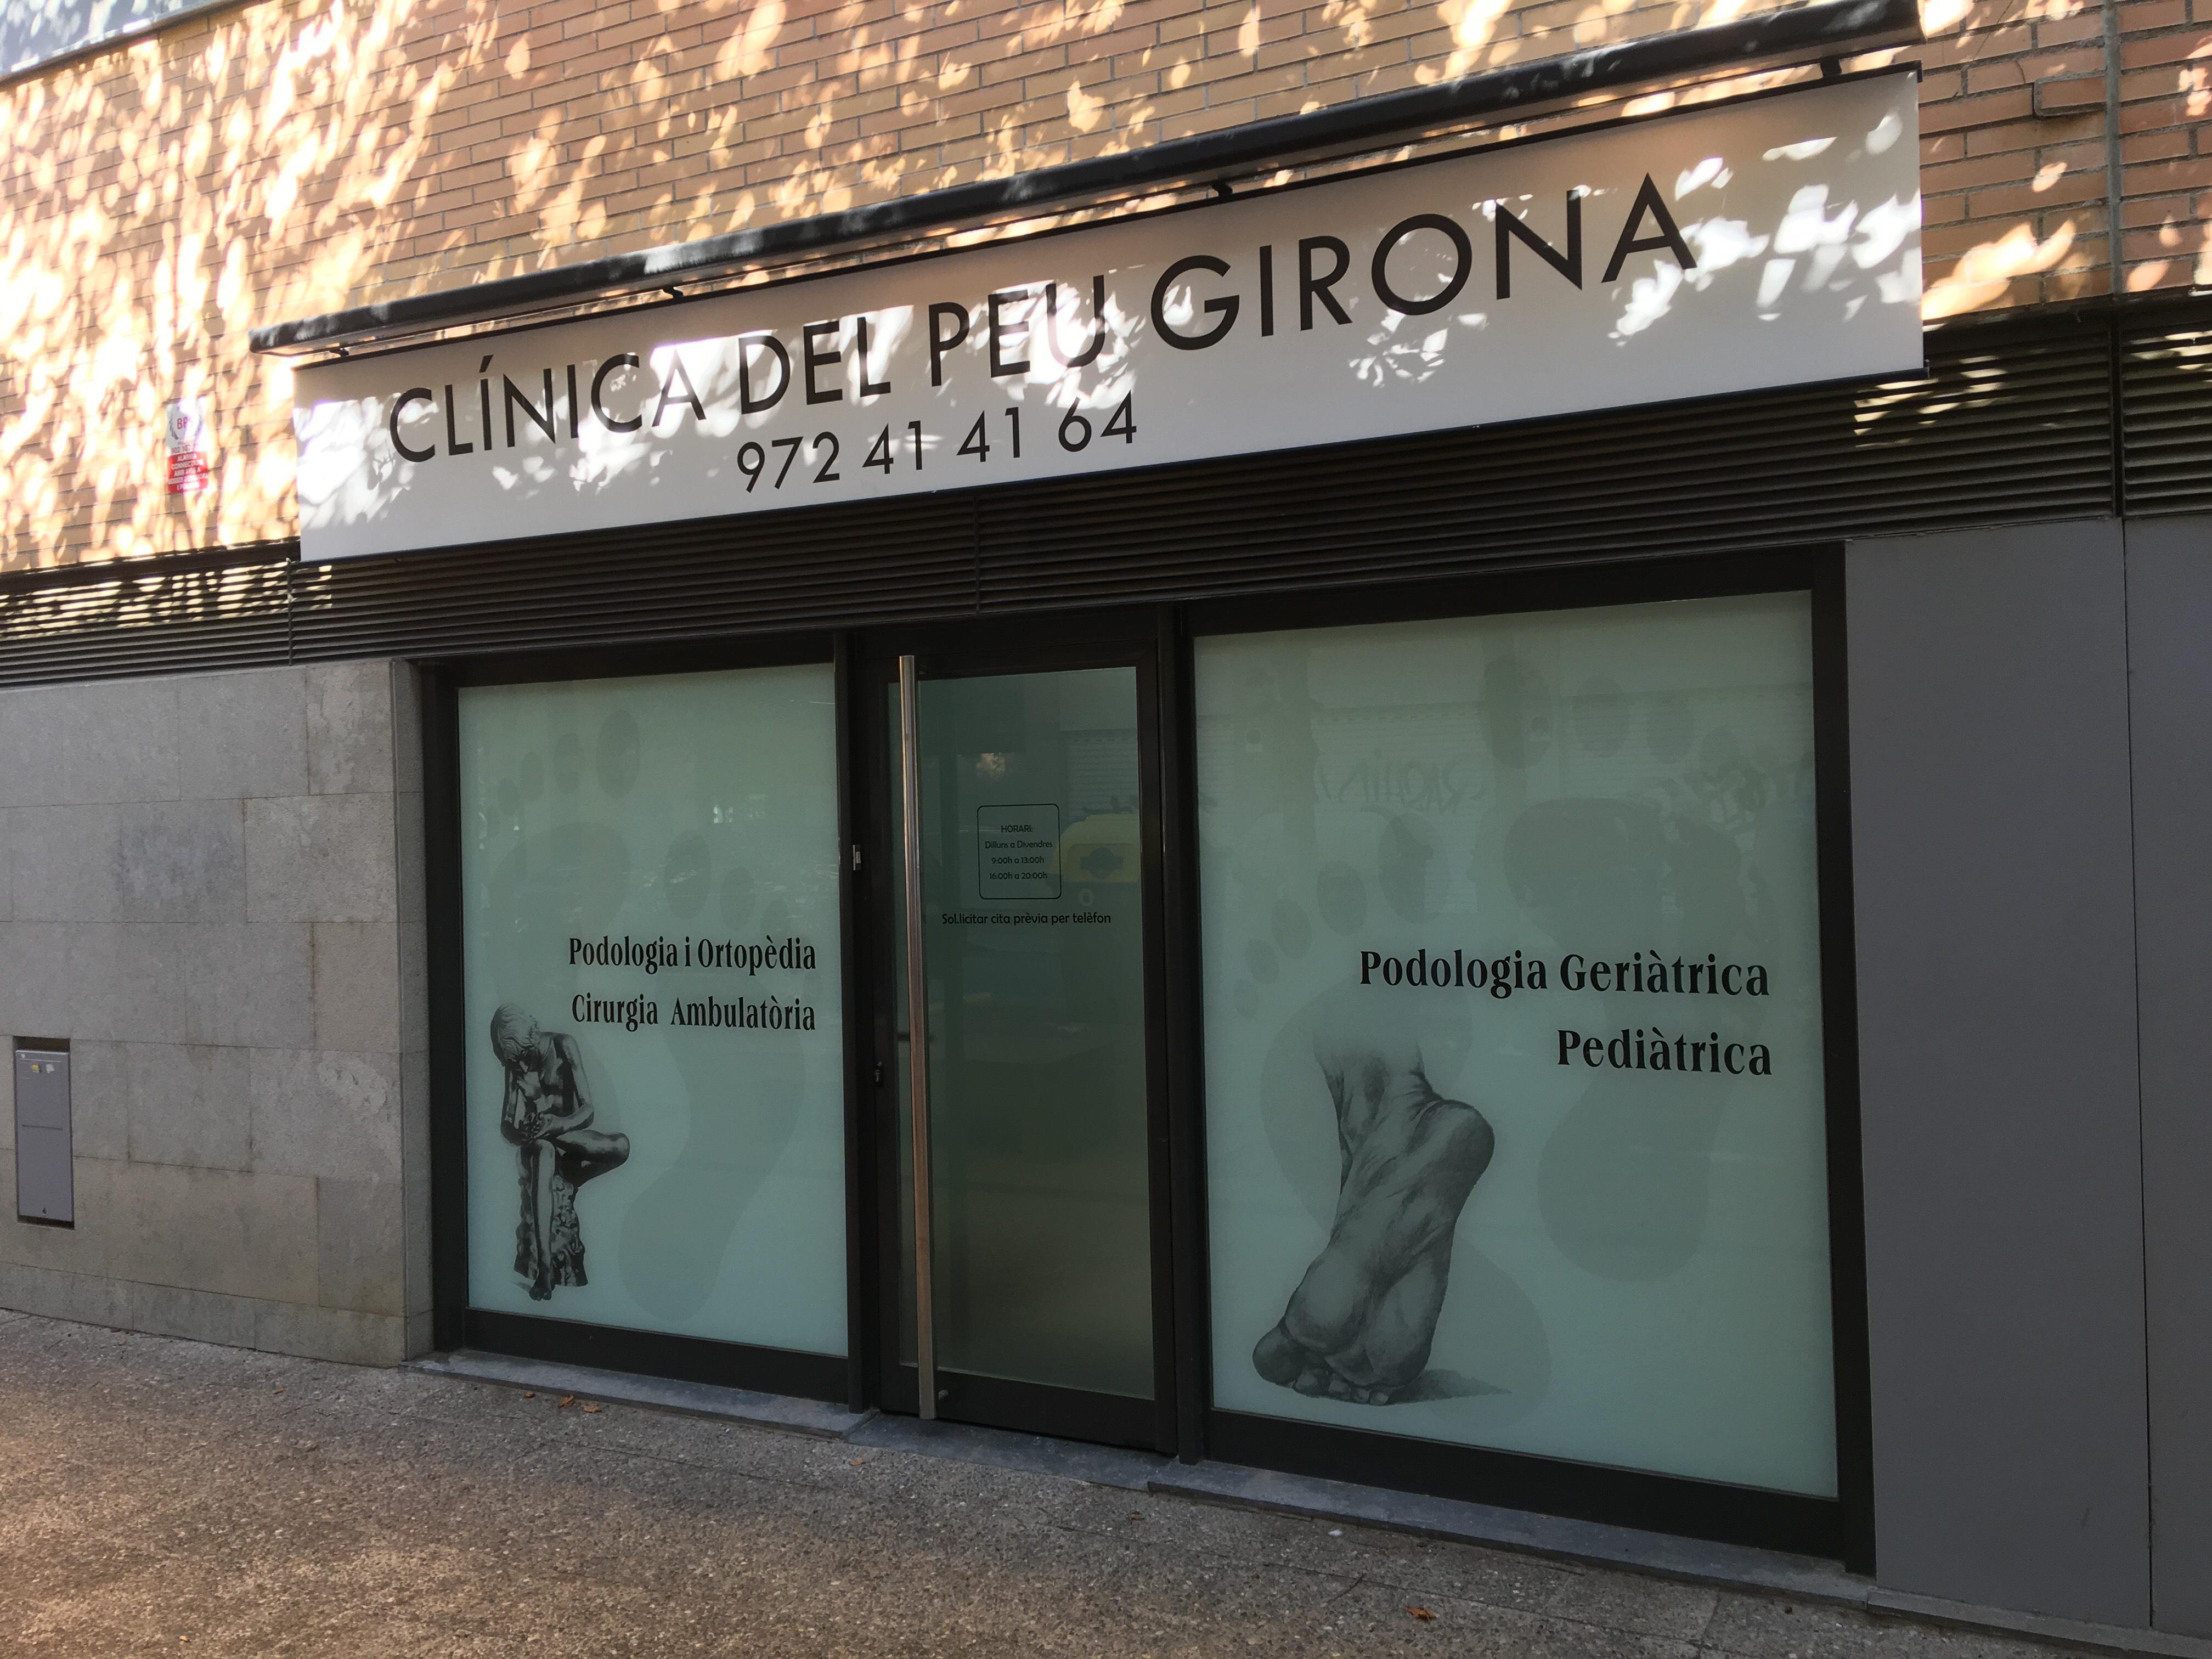 Images Clinica Del Peu Girona - Jordi Moral Malagón